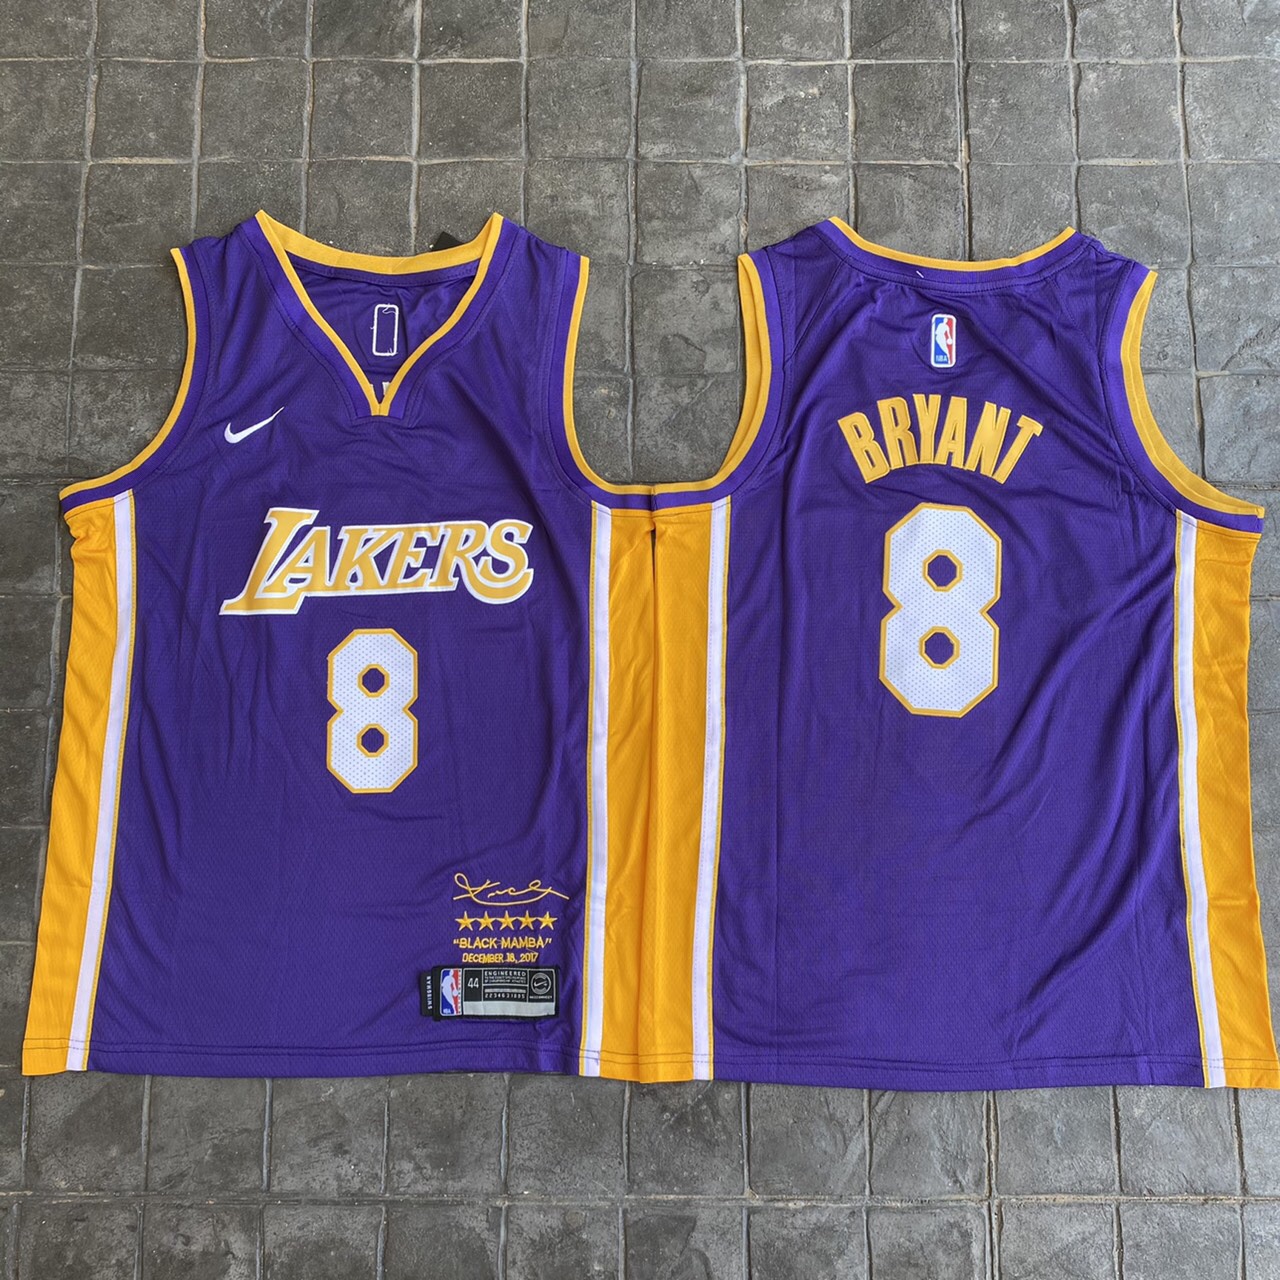 เสื้อบาสเกตบอลbasketball.jerseys(พร้อมจัดส่ง)#Lakers.kobe.8.signature.(pirple color)